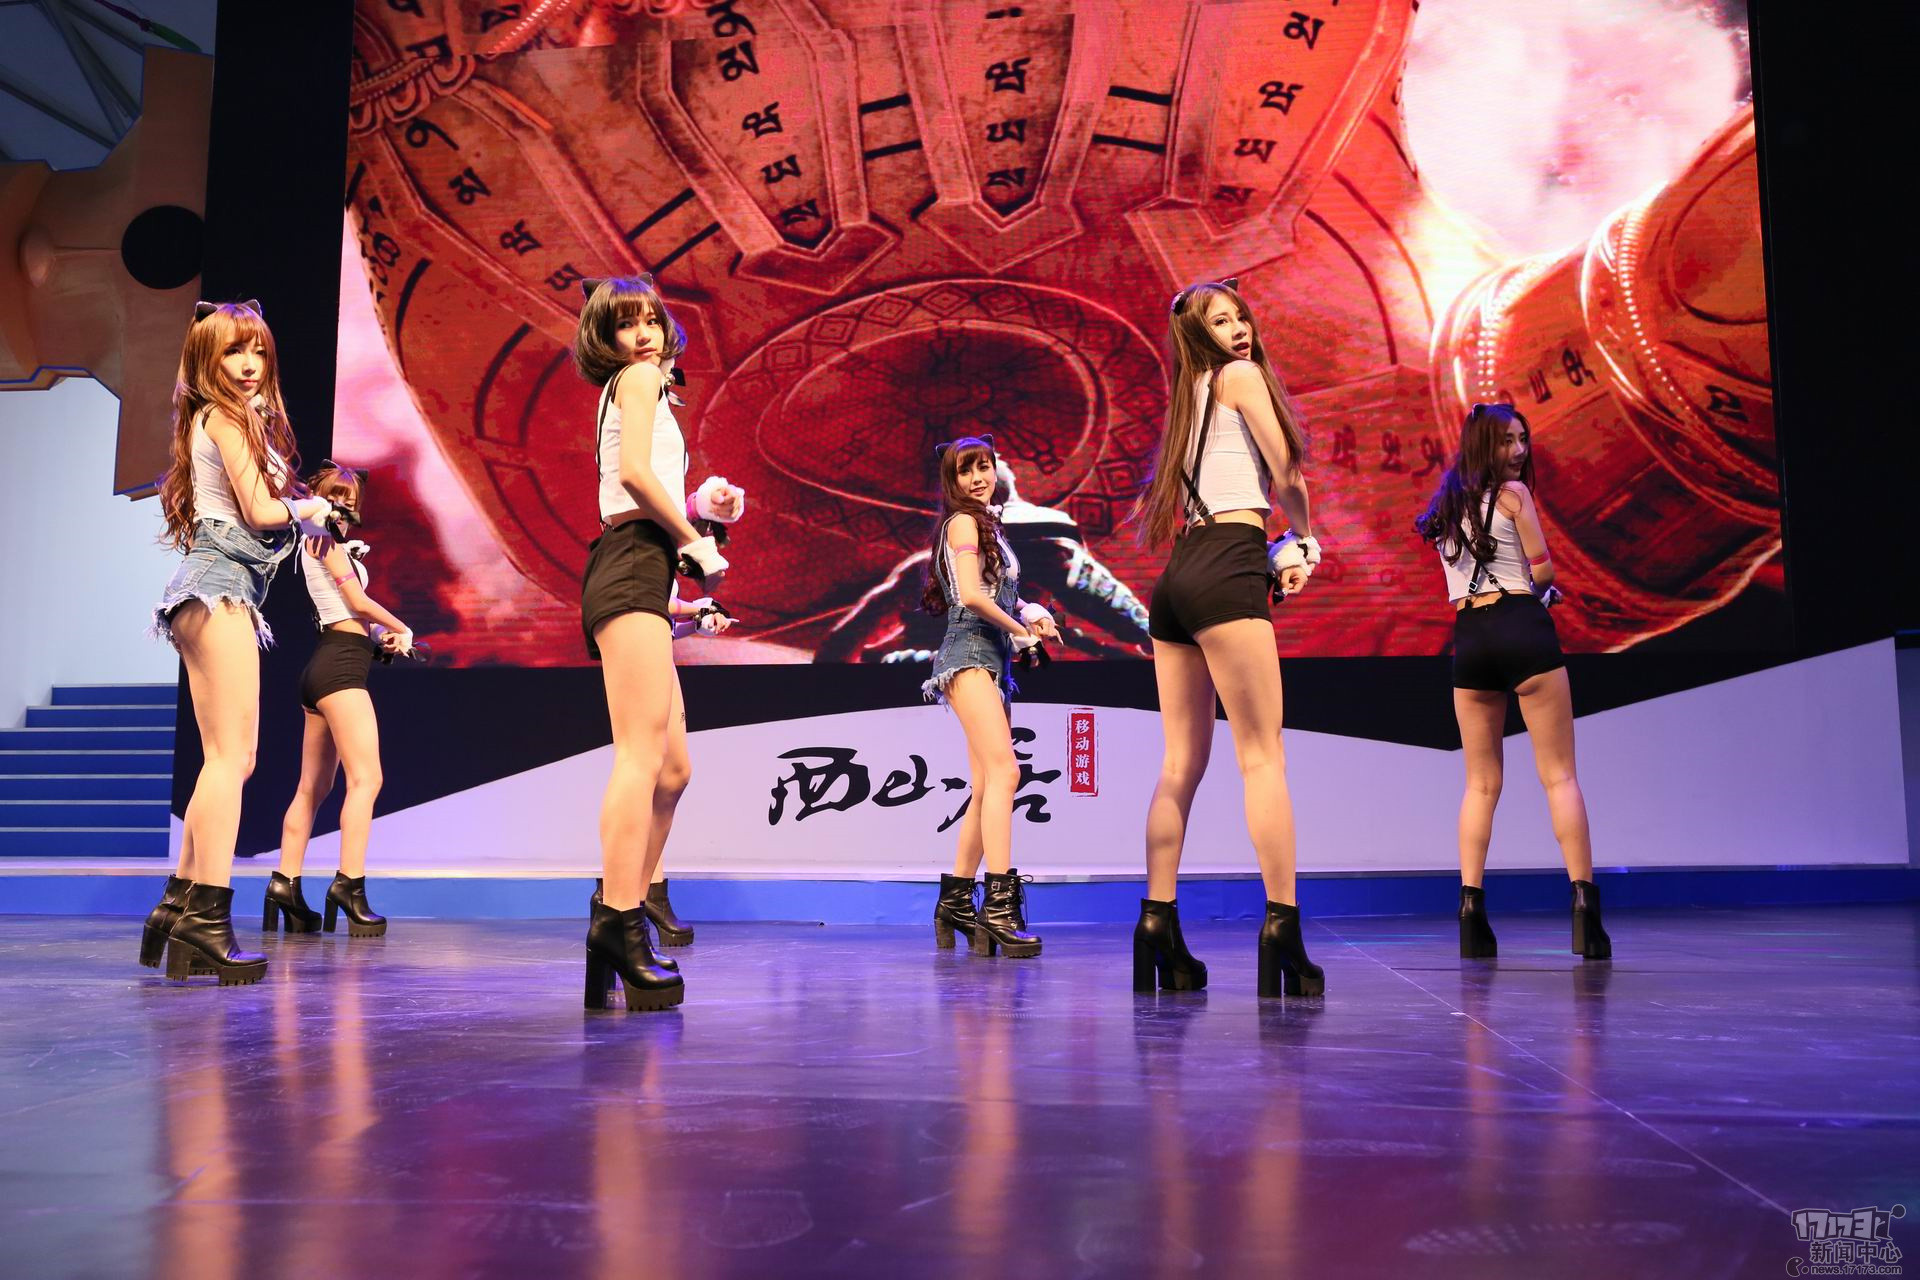 NPH Võ Lâm Truyền Kỳ Trung Quốc mở màn ChinaJoy 2015 với vũ điệu miêu nữ